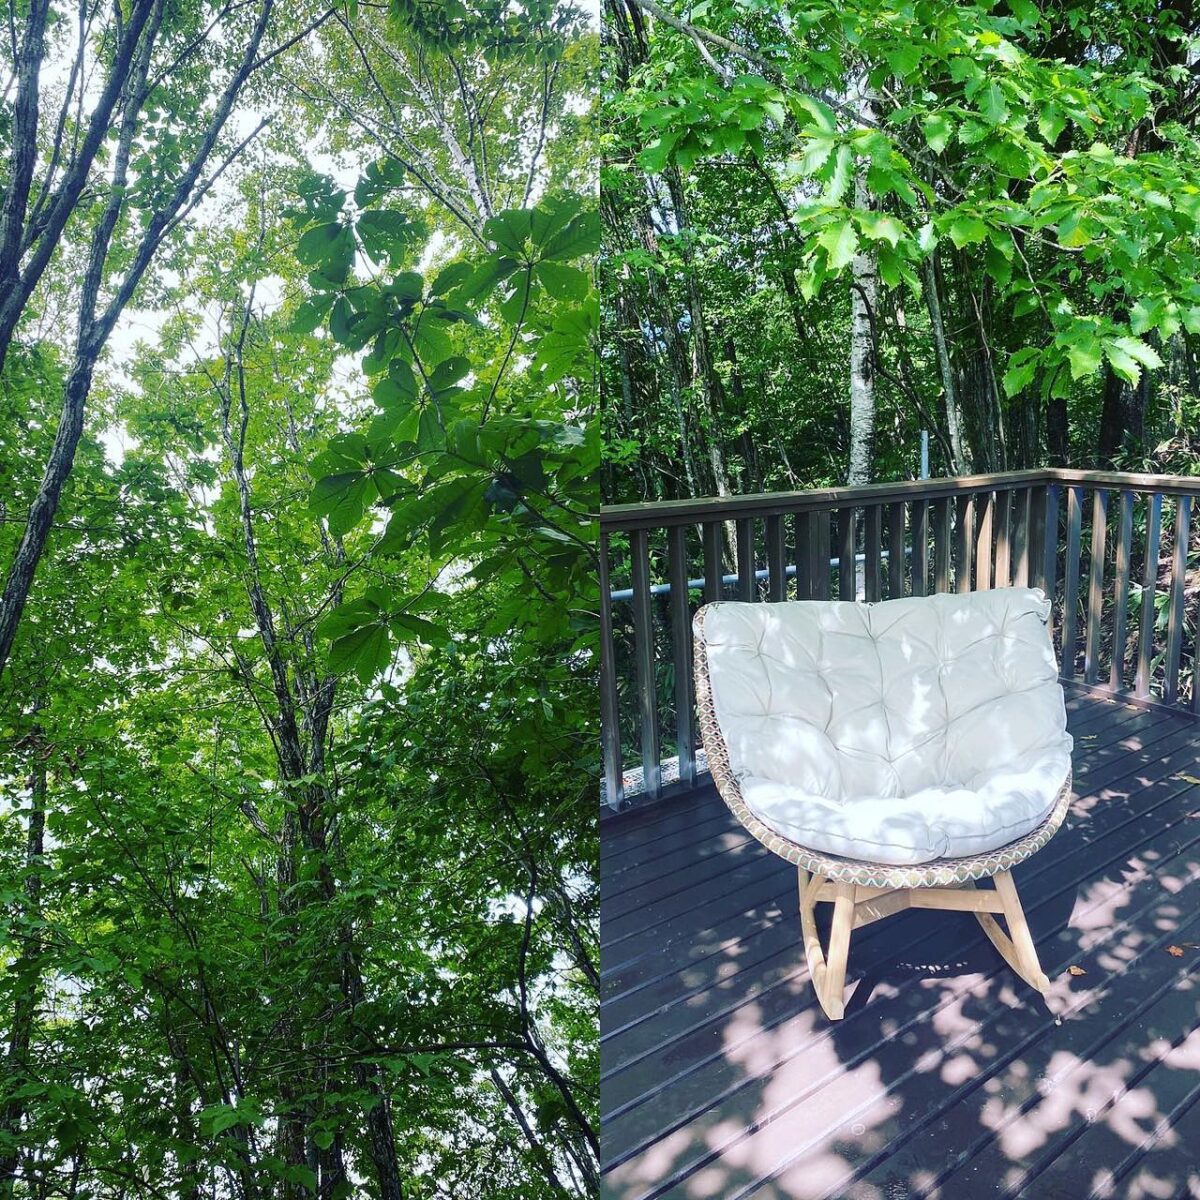 ⁡
【納品事例】　
⁡
森林の中を気持ちいい風を感じながら納品をしてきました。　
DEDONのエンブレイスロッキングチェアーをデッキの上に。　
⁡
お色はショールームと同じチェスナッツです。
こんな気持ちのいいデッキの上でこの椅子に座って空を仰い
だら、思わず深呼吸しかでないほどのリラックス感です。　
⁡
これからの季節は、本当に気持ちがよさそう。　
ご家族の皆様のくつろぎスポットになりますように。
⁡
⁡